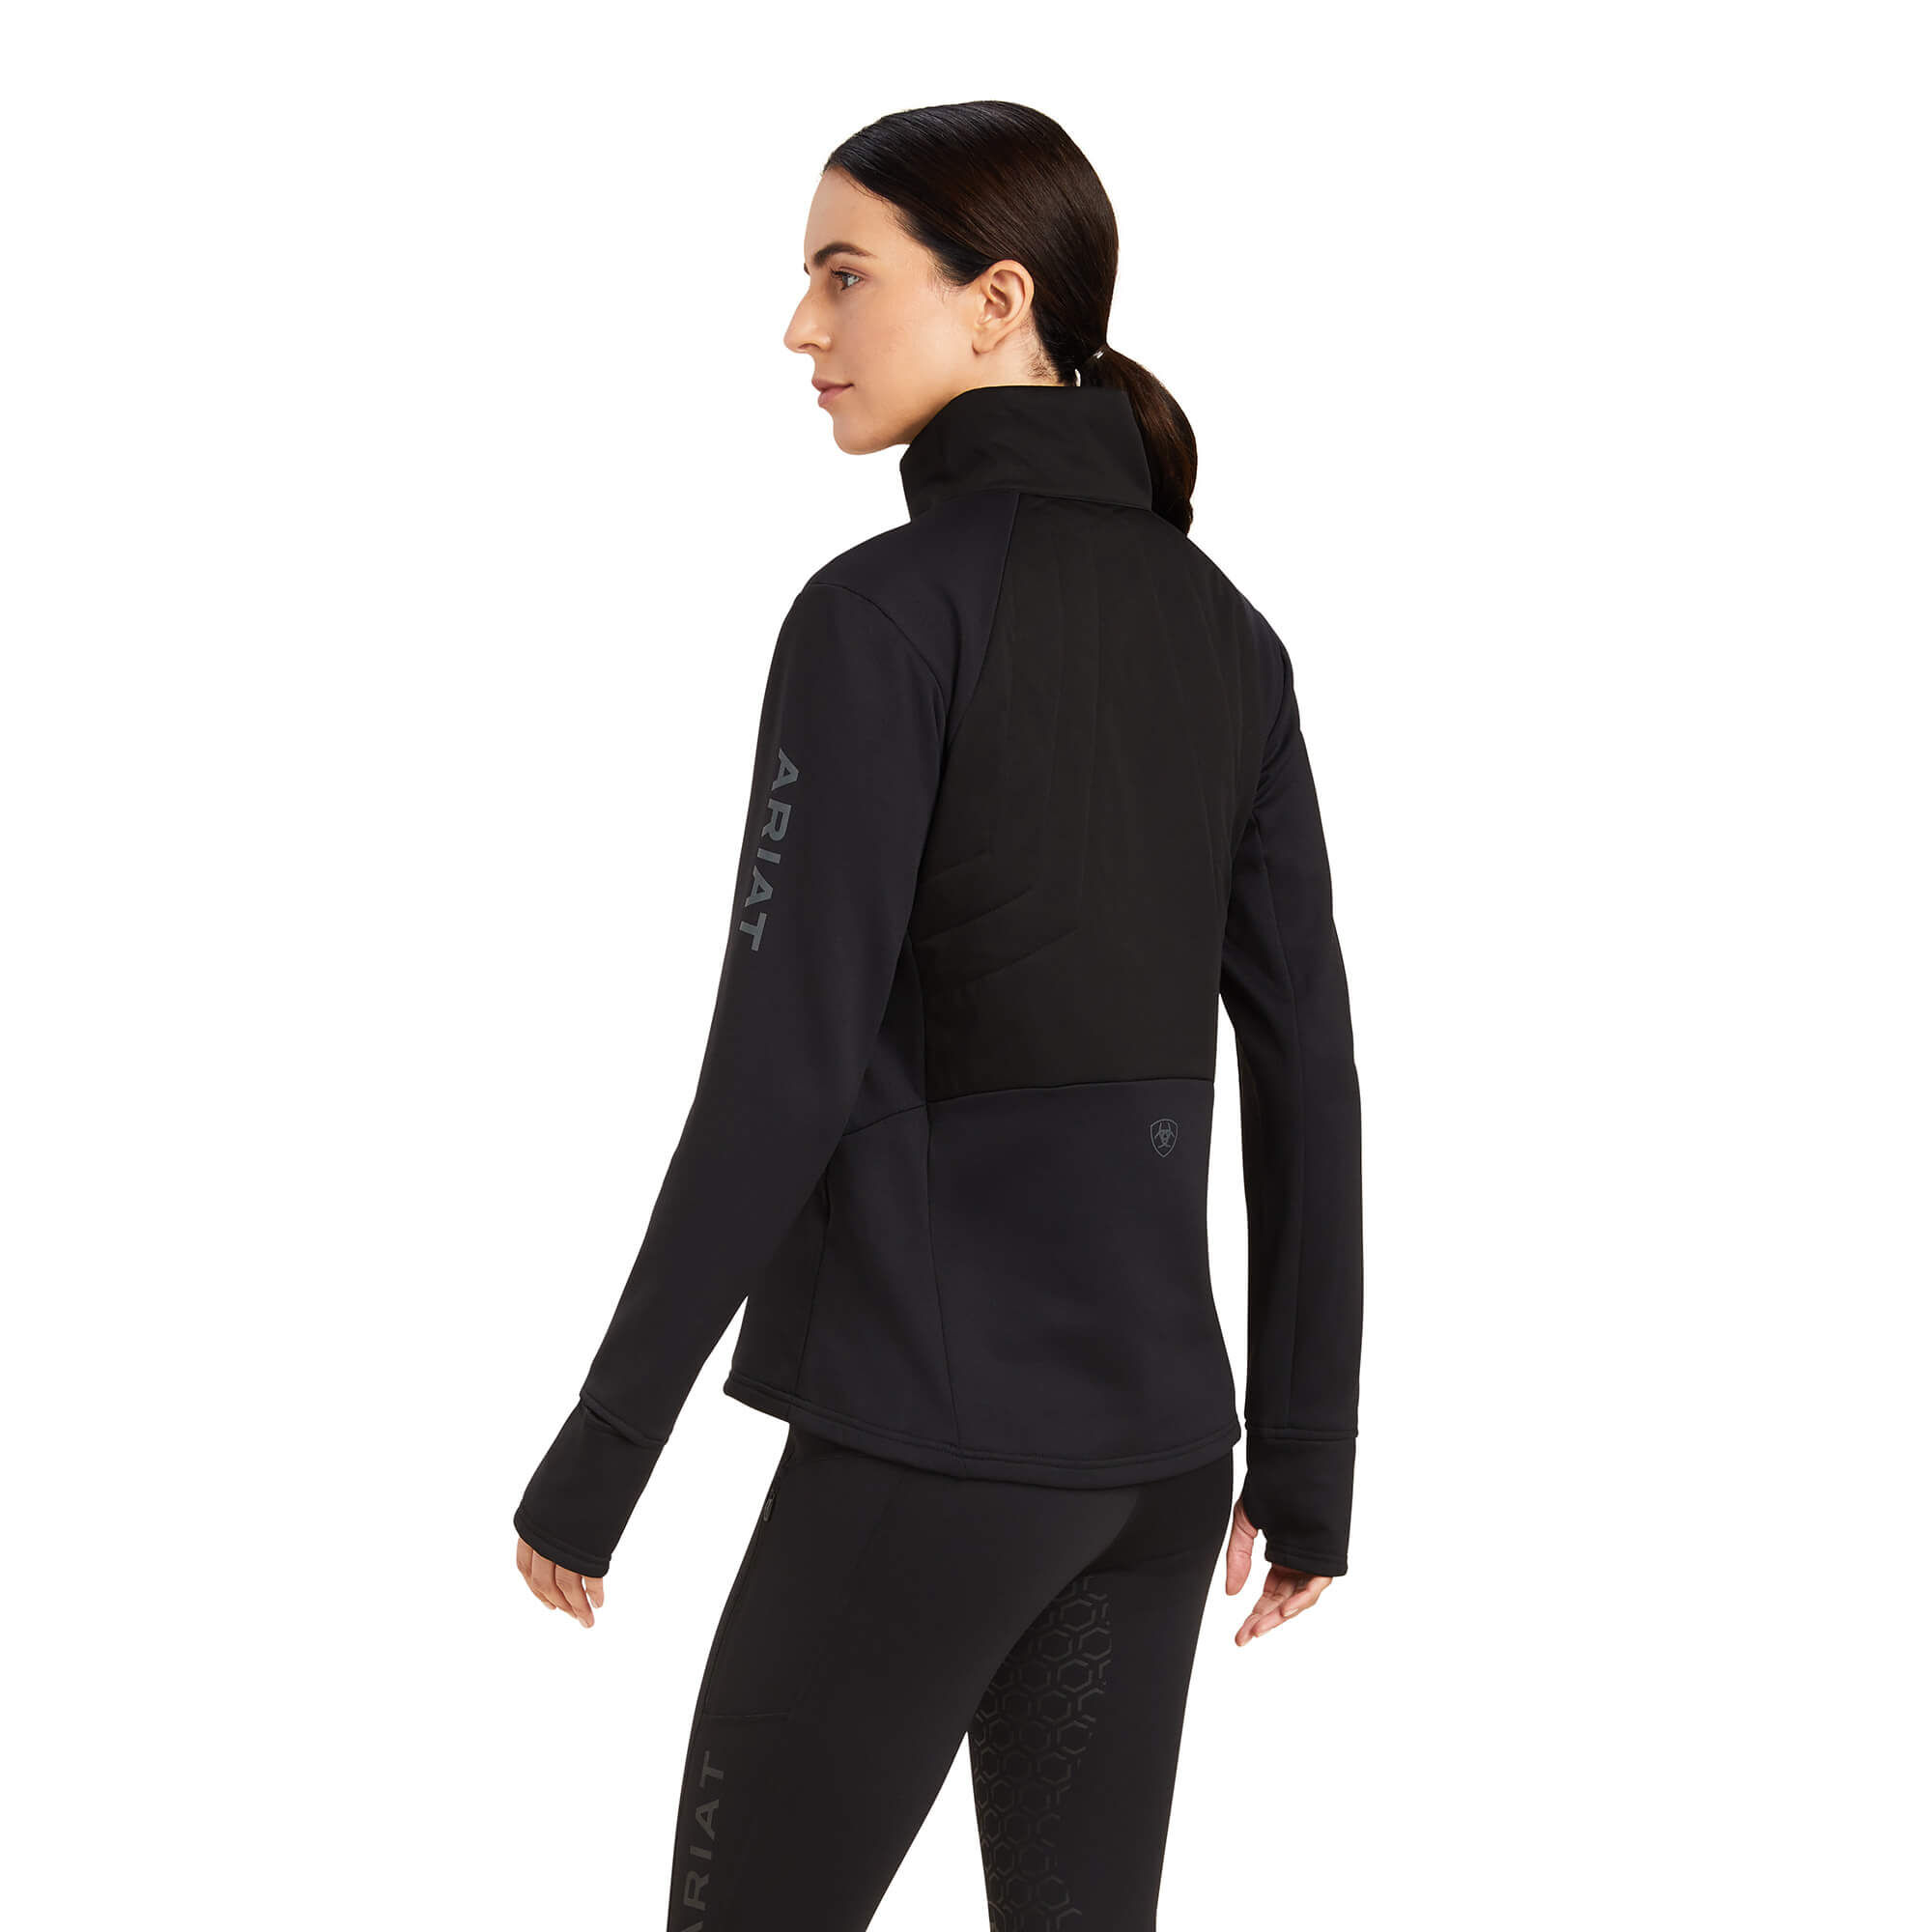 Women's Venture 1/2 Zip Sweatshirt in Black, Size: Medium by Ariat